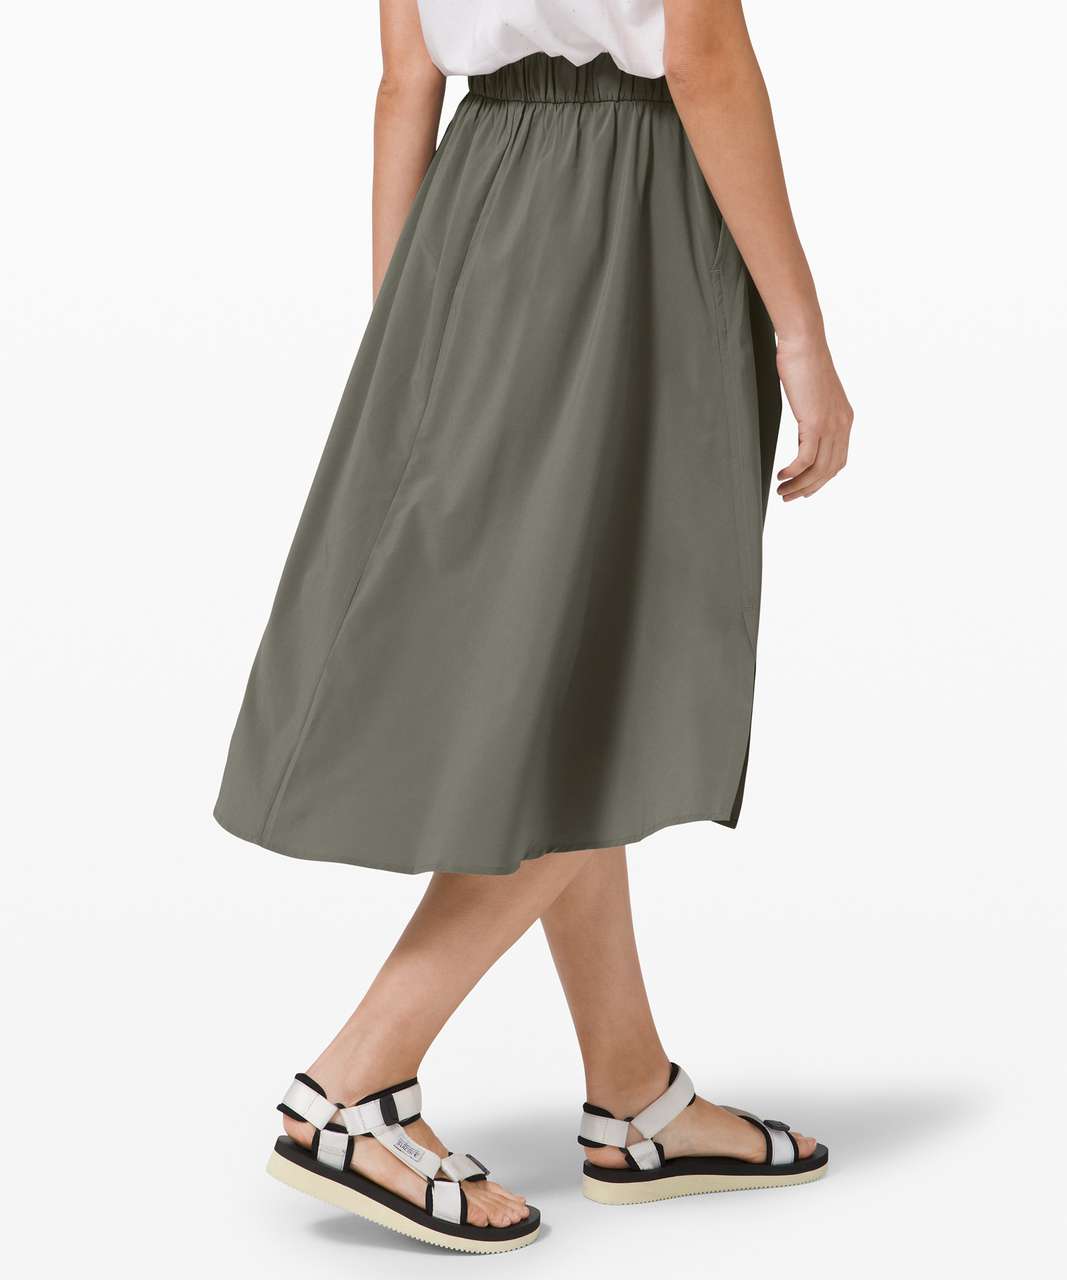 Lululemon Time to Flounce Skirt - Grey Sage